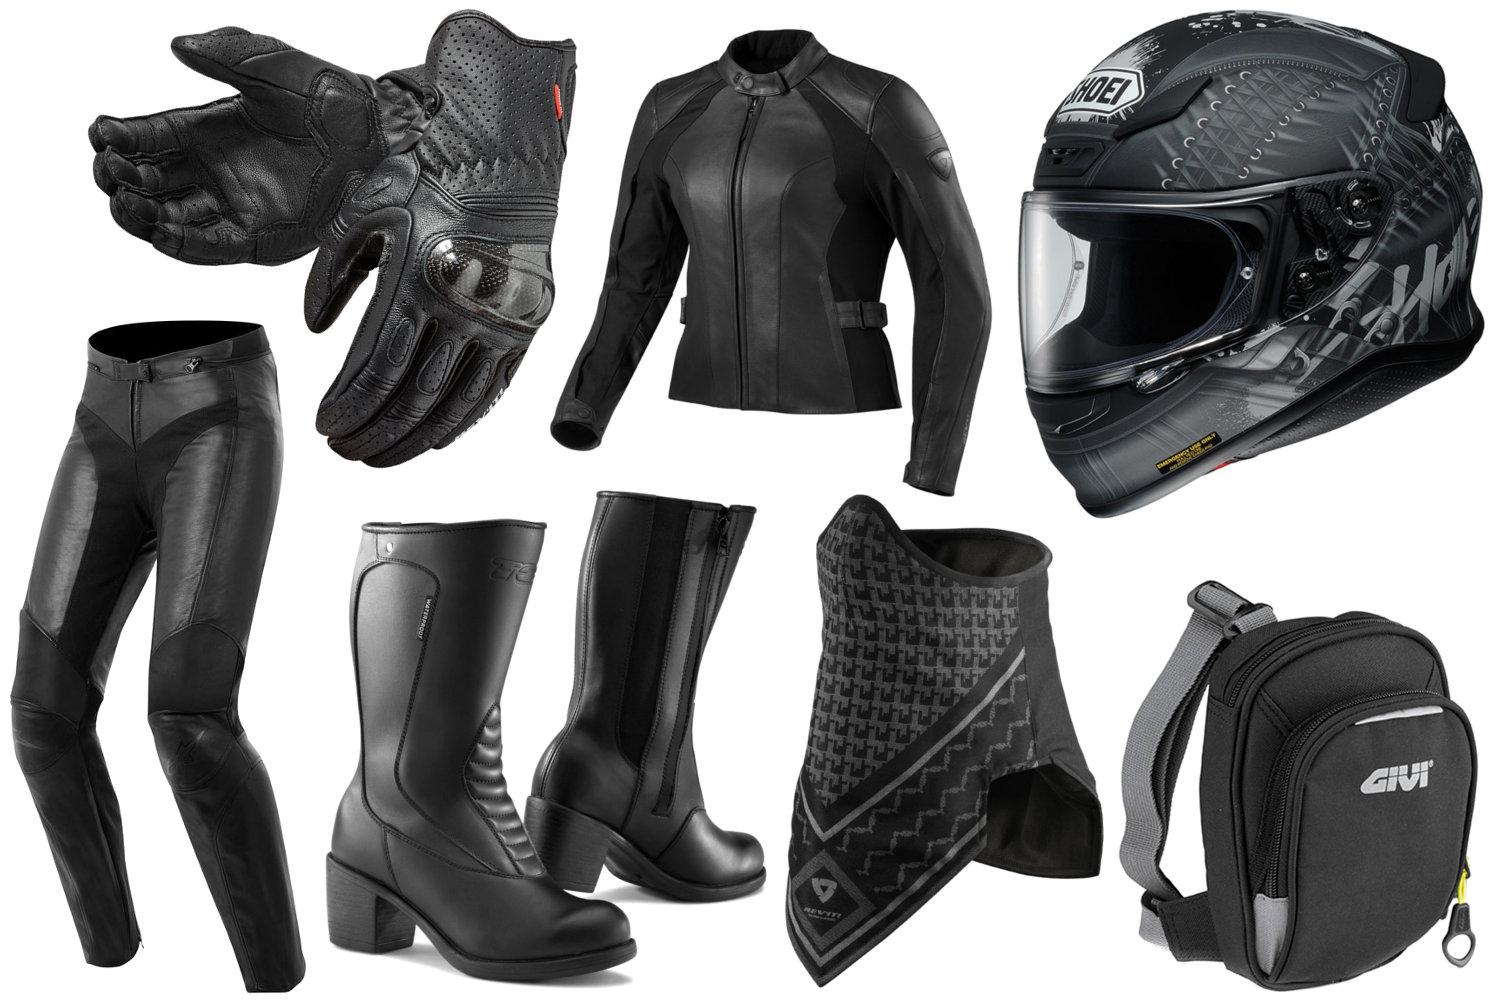 Le full black, l'équipement motarde que je trouve le plus classe !